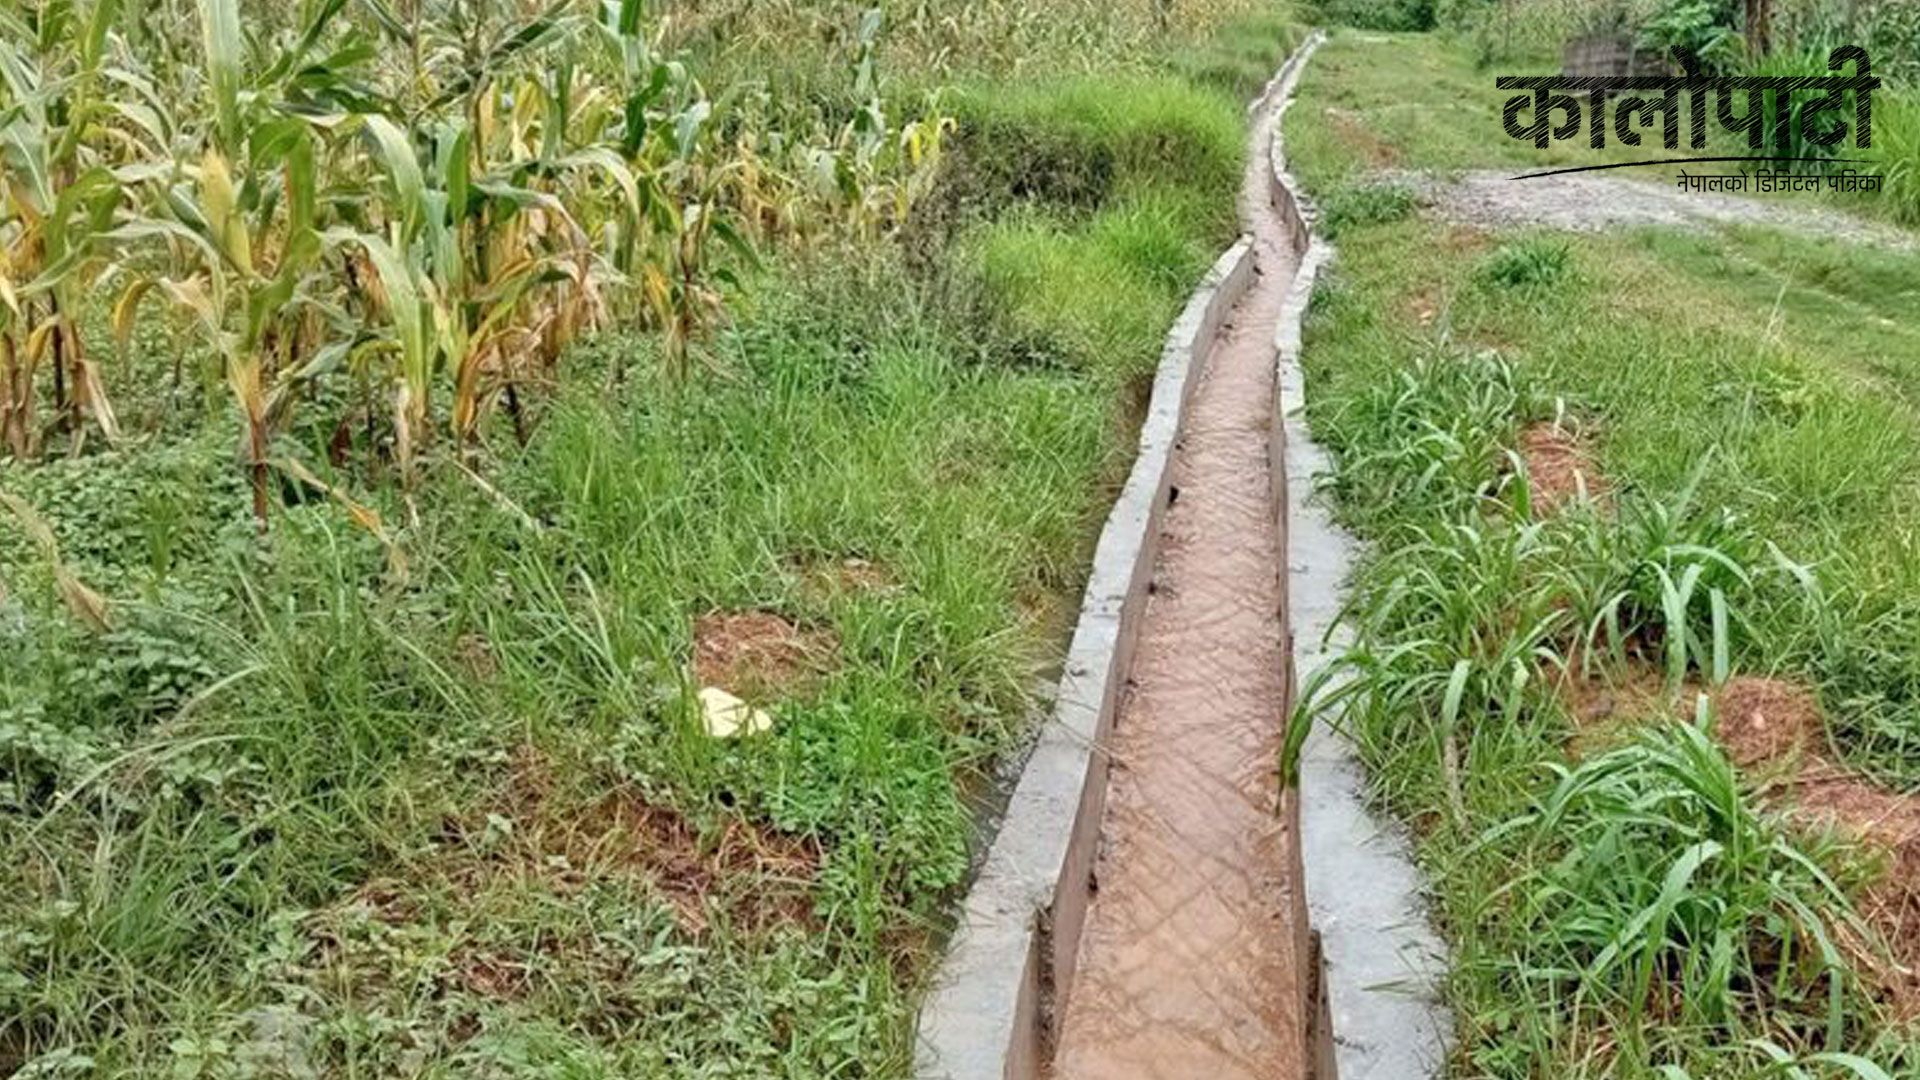 पाल्पामा सिँचाइले फेरिएको जीवनशैली : बाँझो खेतमा  अन्नपात फलदा किसान हर्षित